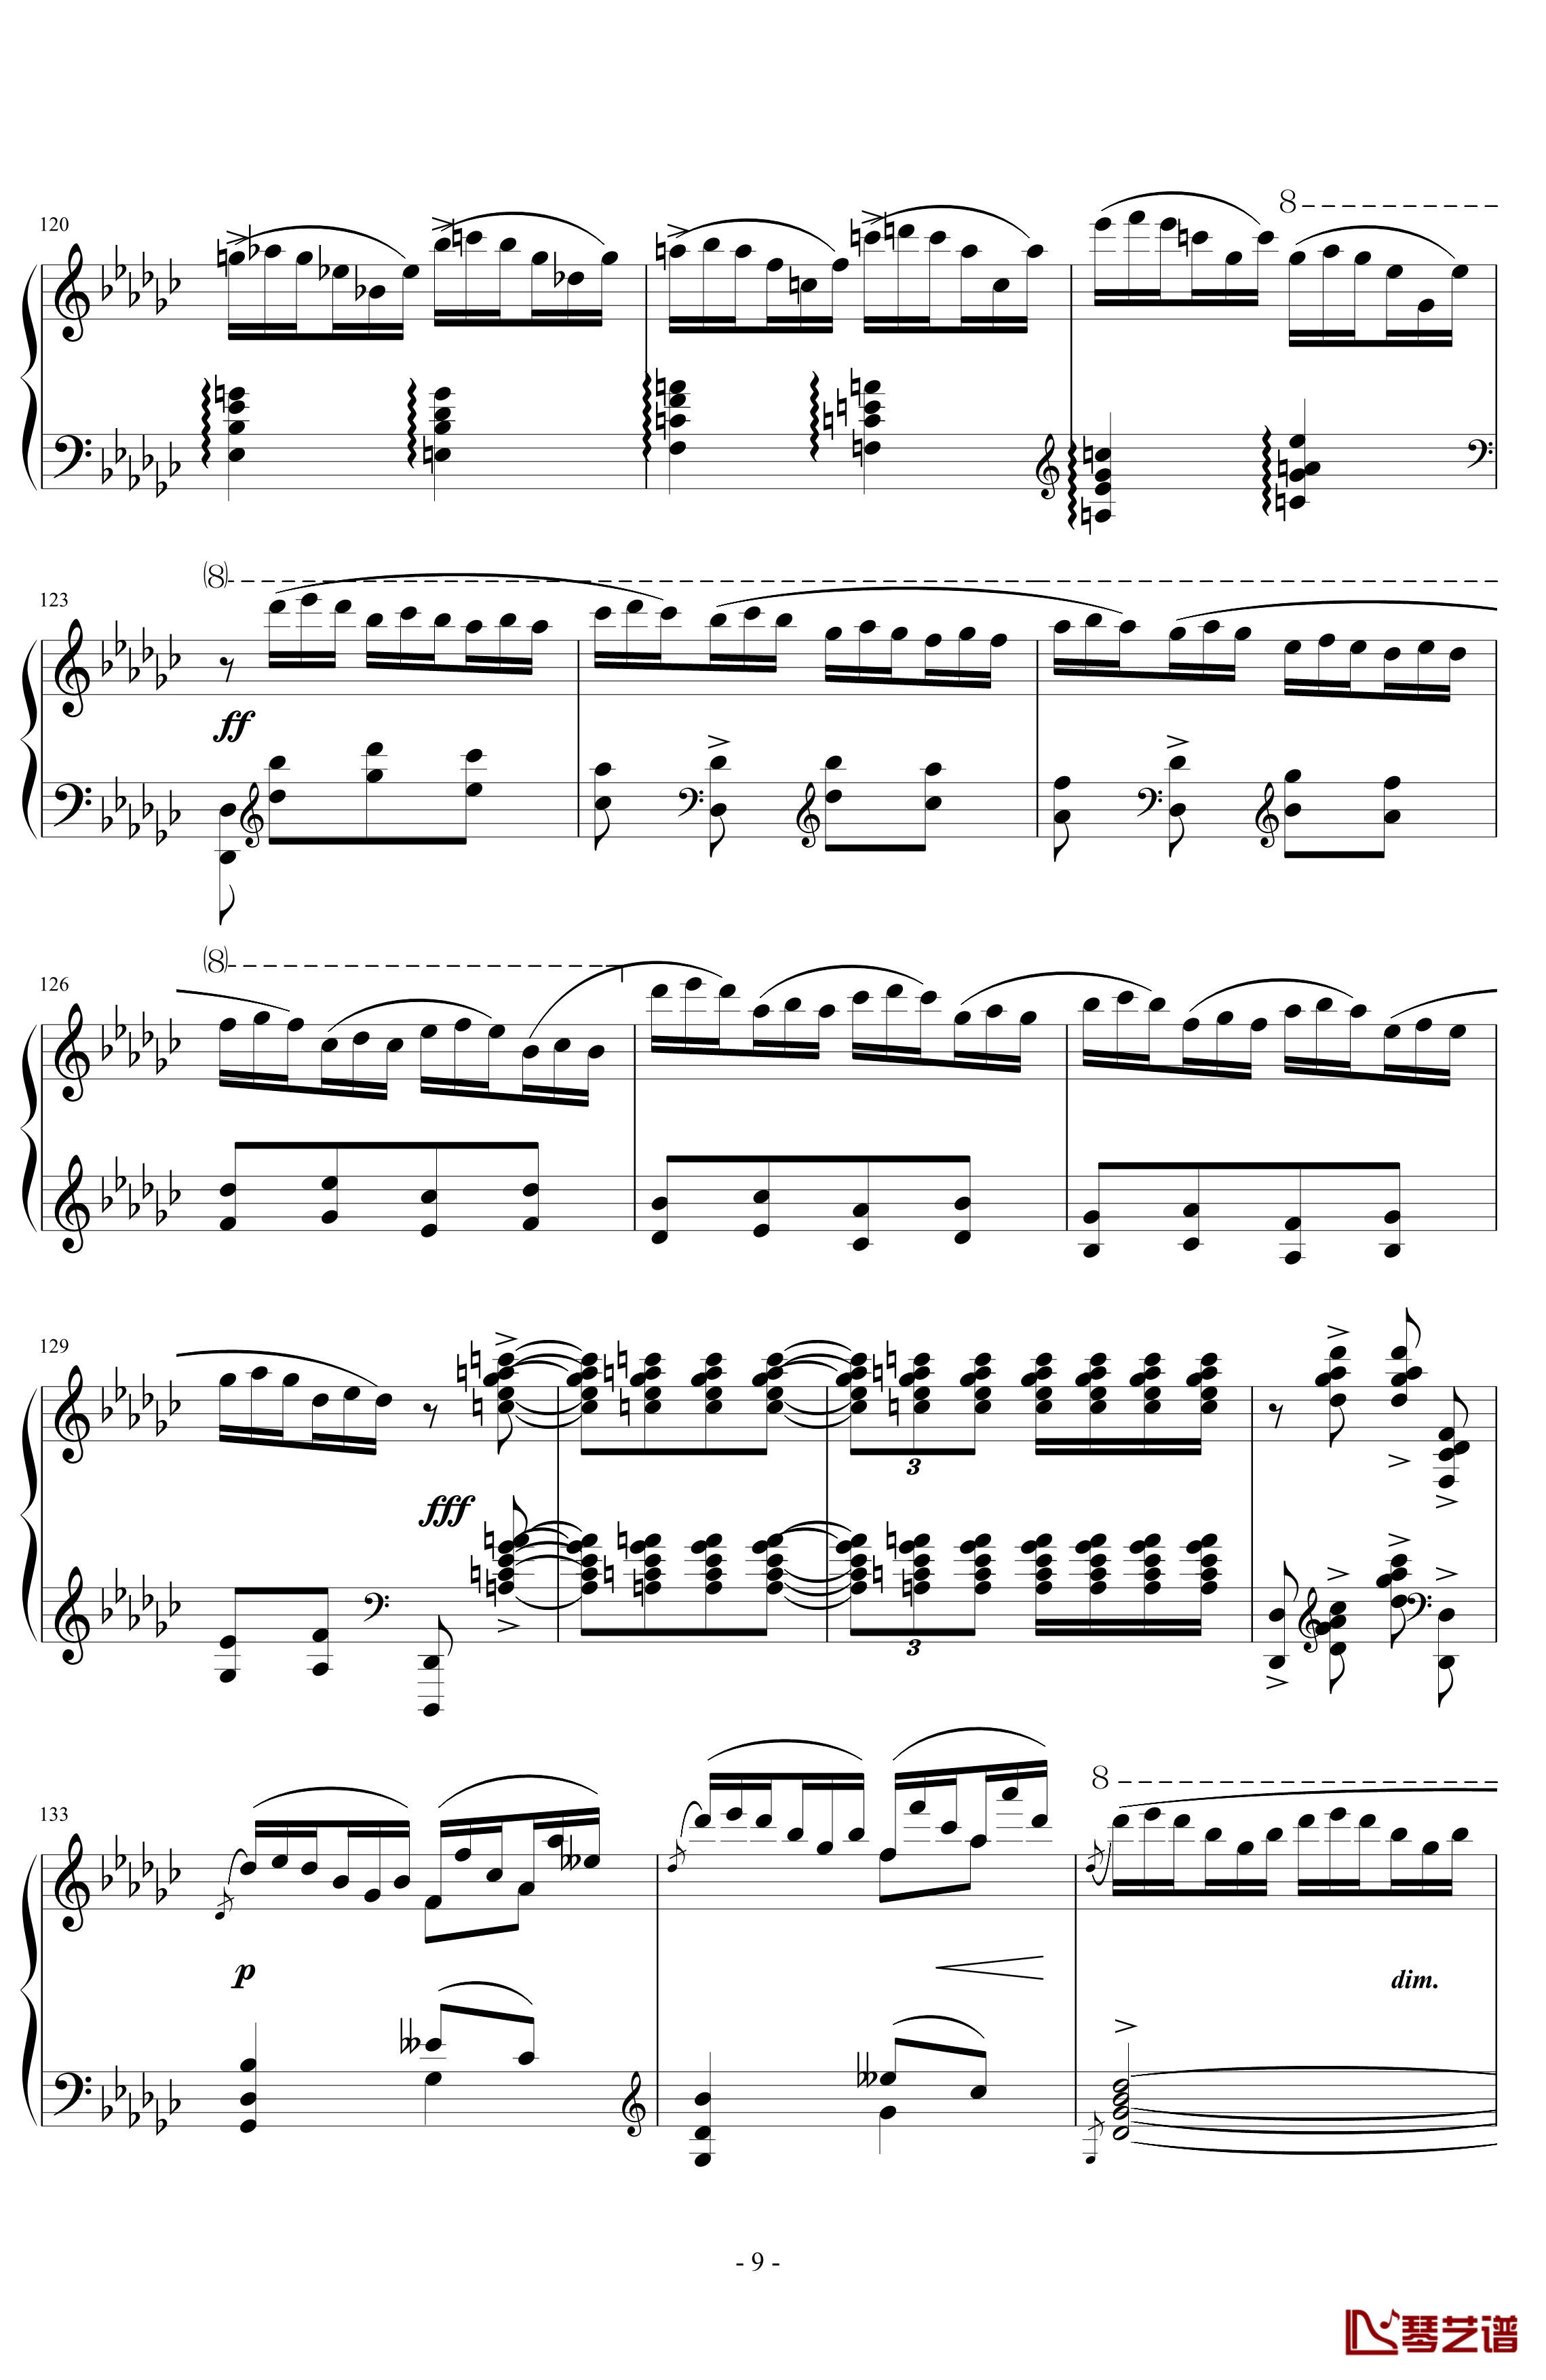 《练习曲Op.25 No.3》钢琴谱-阿连斯基-希望能为大家带来惊喜9